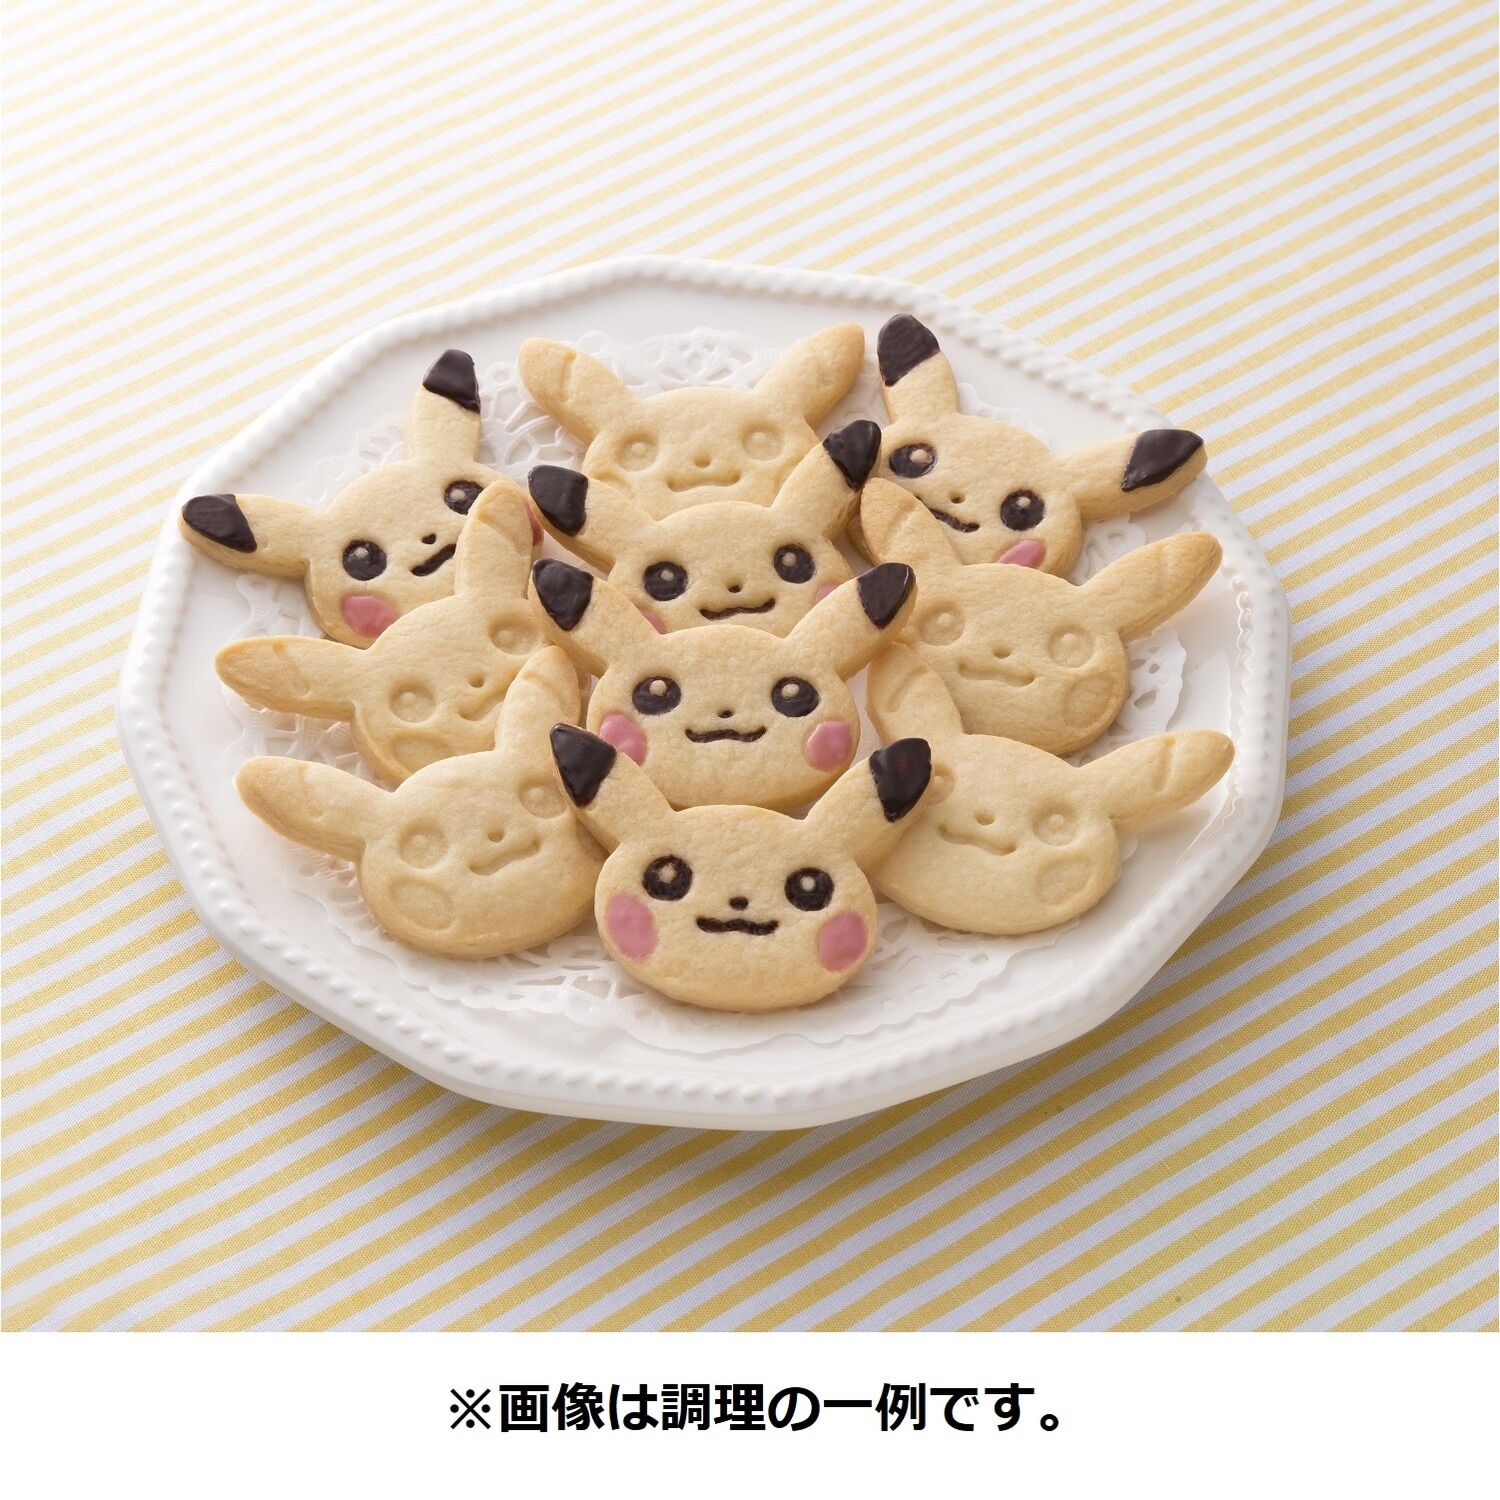 Pokemon Center Original Pikachu Cookie Kit